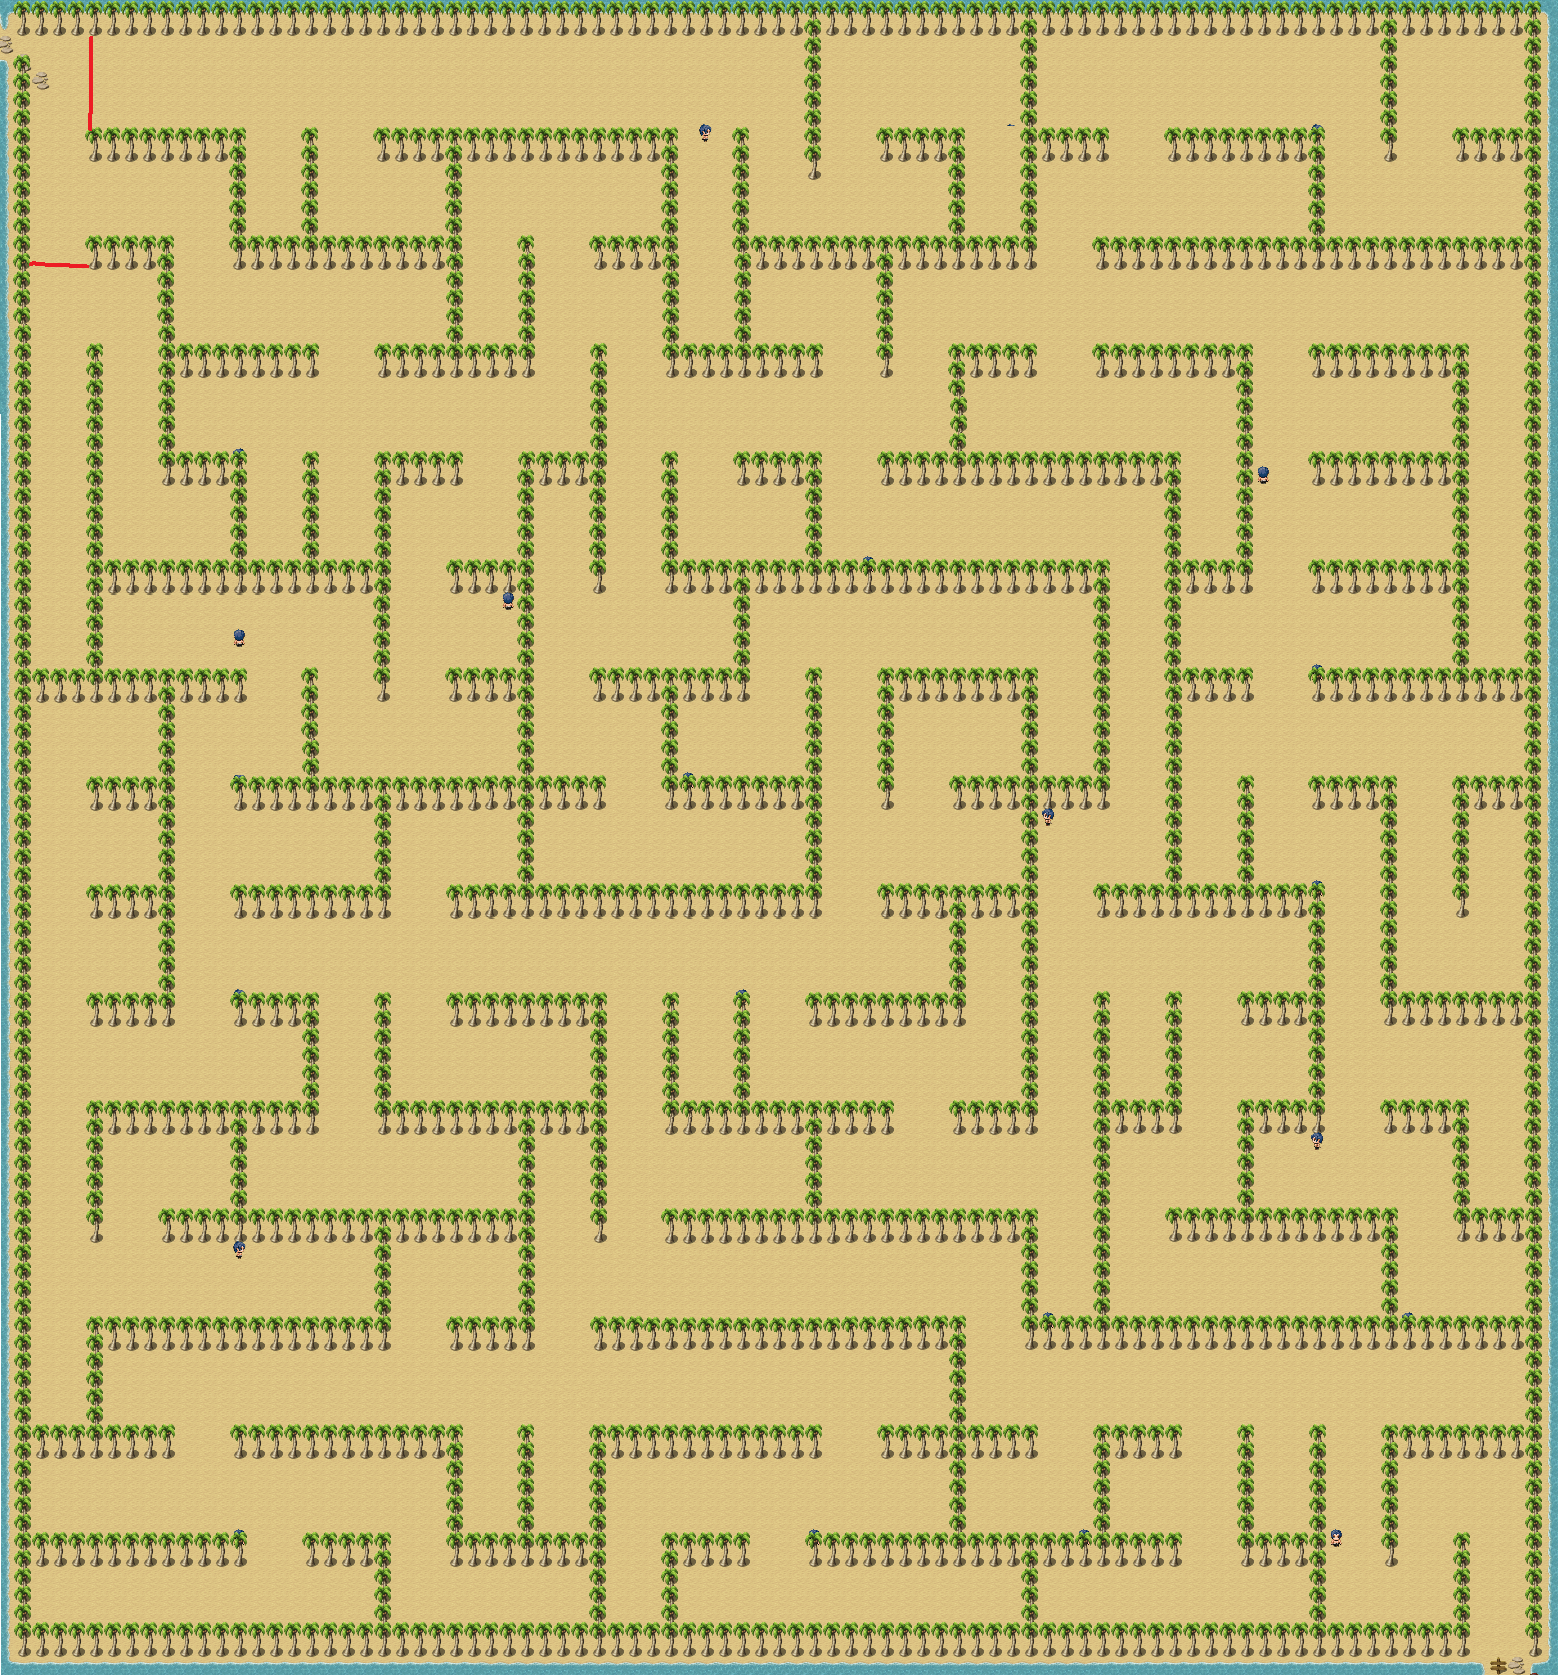 DI Maze Map 1.png